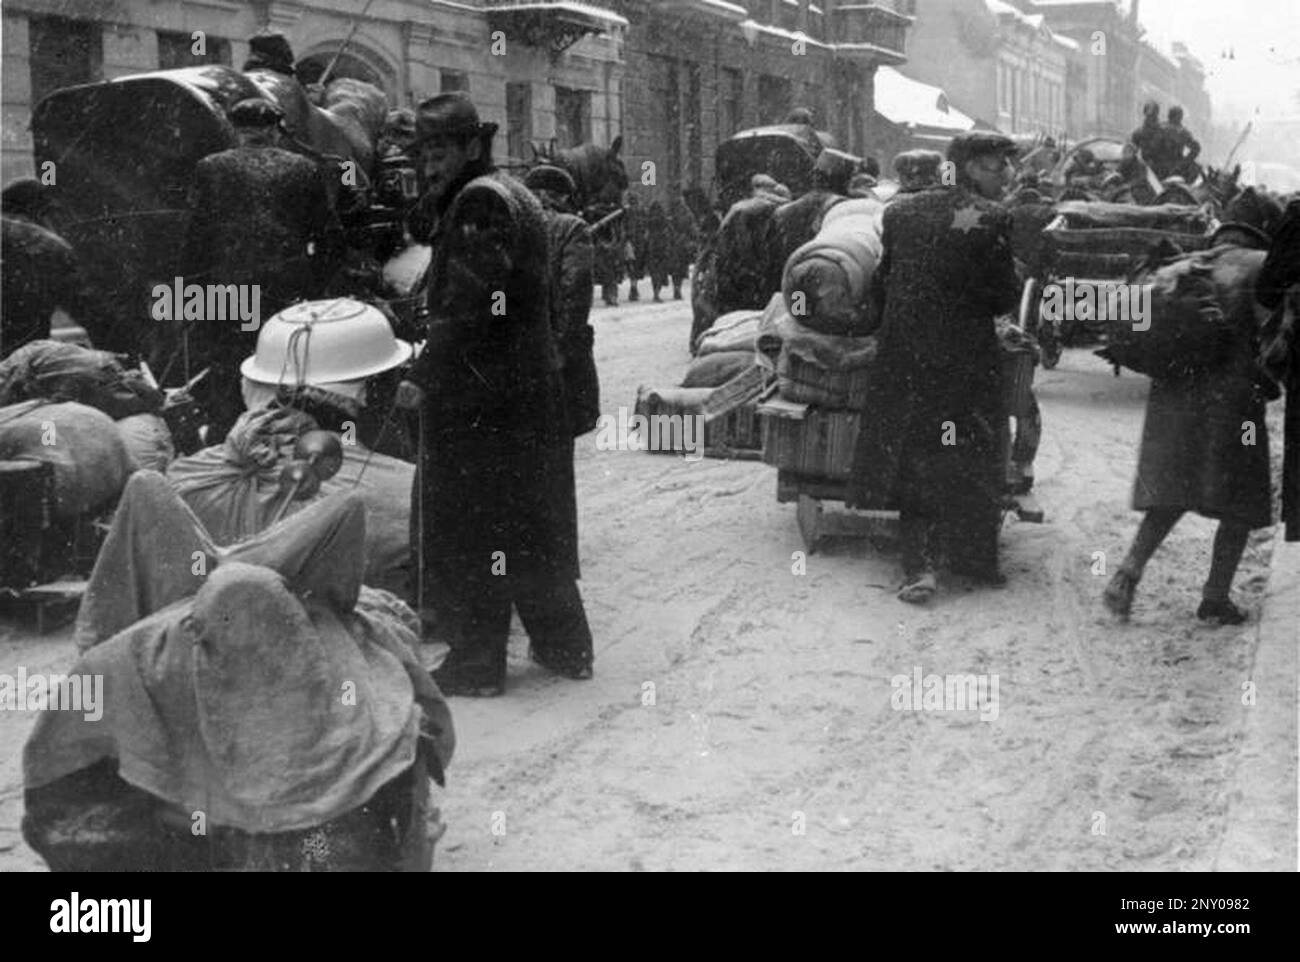 Nelle prime fasi del WW2 gli ebrei dell'europa occupata dai nazisti furono arrotondati e costretti a diventare ghetti affollati. Quando fu presa la decisione di ucciderli tutti furono deportati in centri di sterminio per essere assassinati. Questa immagine mostra le persone , deportate dalle case altrove, arrivando nel Ghetto di Lodz. Polen, Ghetto Litzmannstadt, deportazione. Bundesarchiv, Bild 137-056925 / CC-BY-SA 3,0 Foto Stock